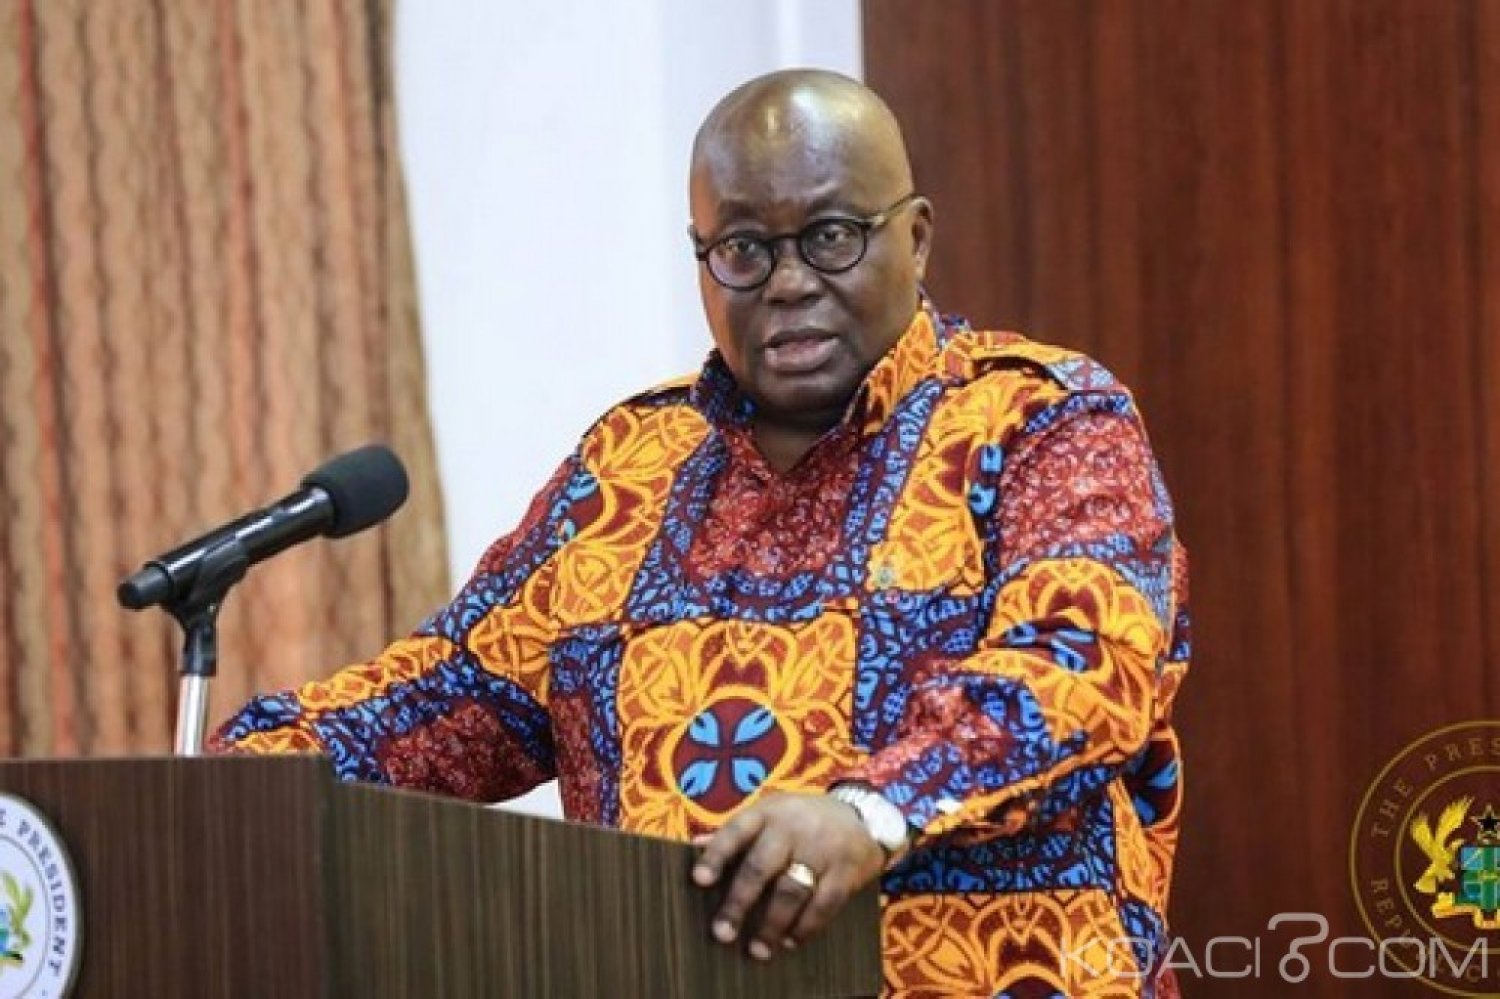 Ghana : An 2019 et perspectives, le pays sur la bonne voie selon Akufo-Addo